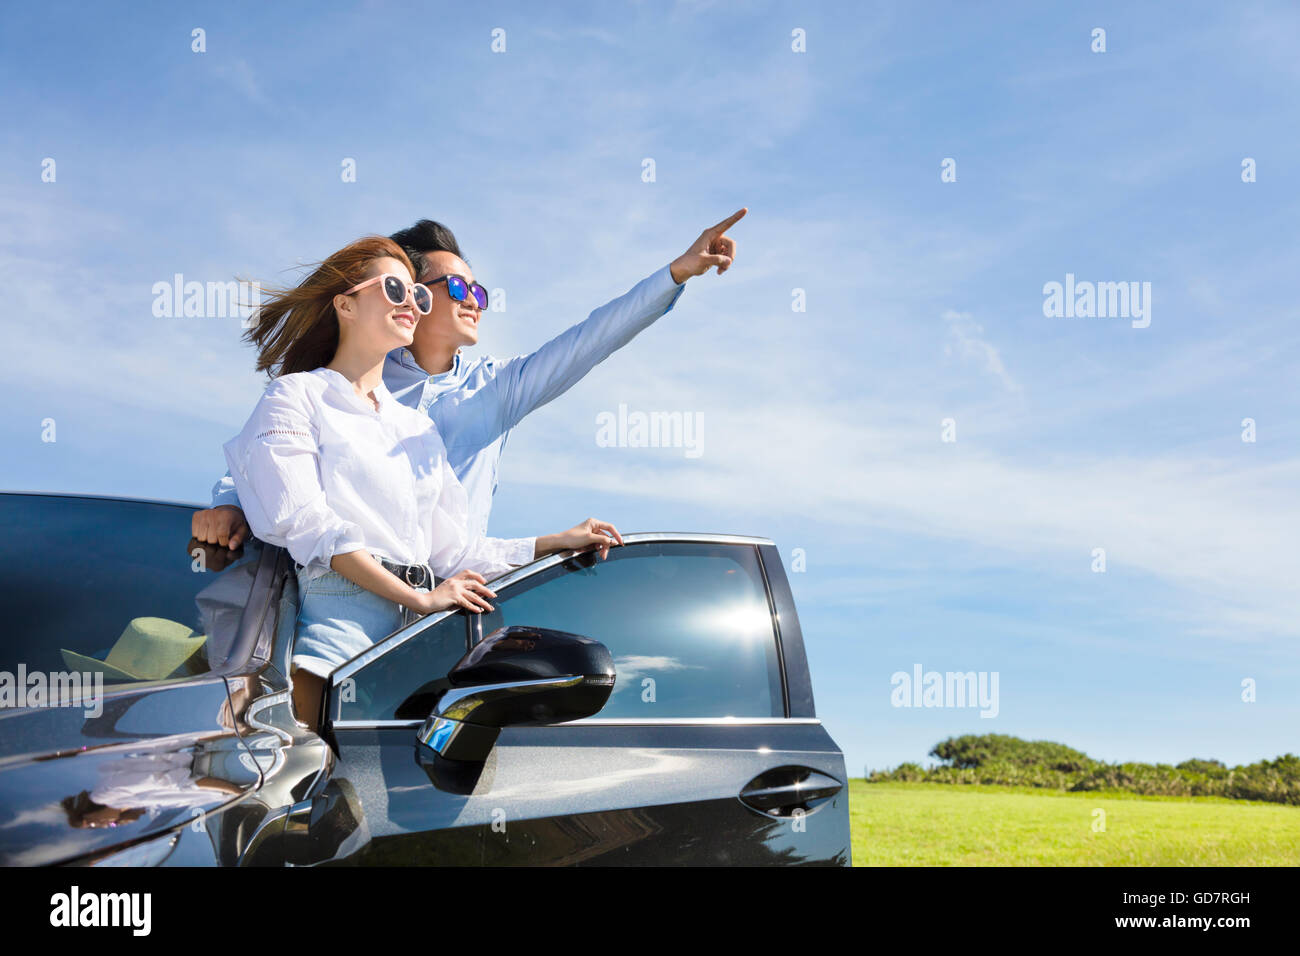 Coppia giovane in piedi vicino alla macchina e godetevi la vacanza estiva Foto Stock